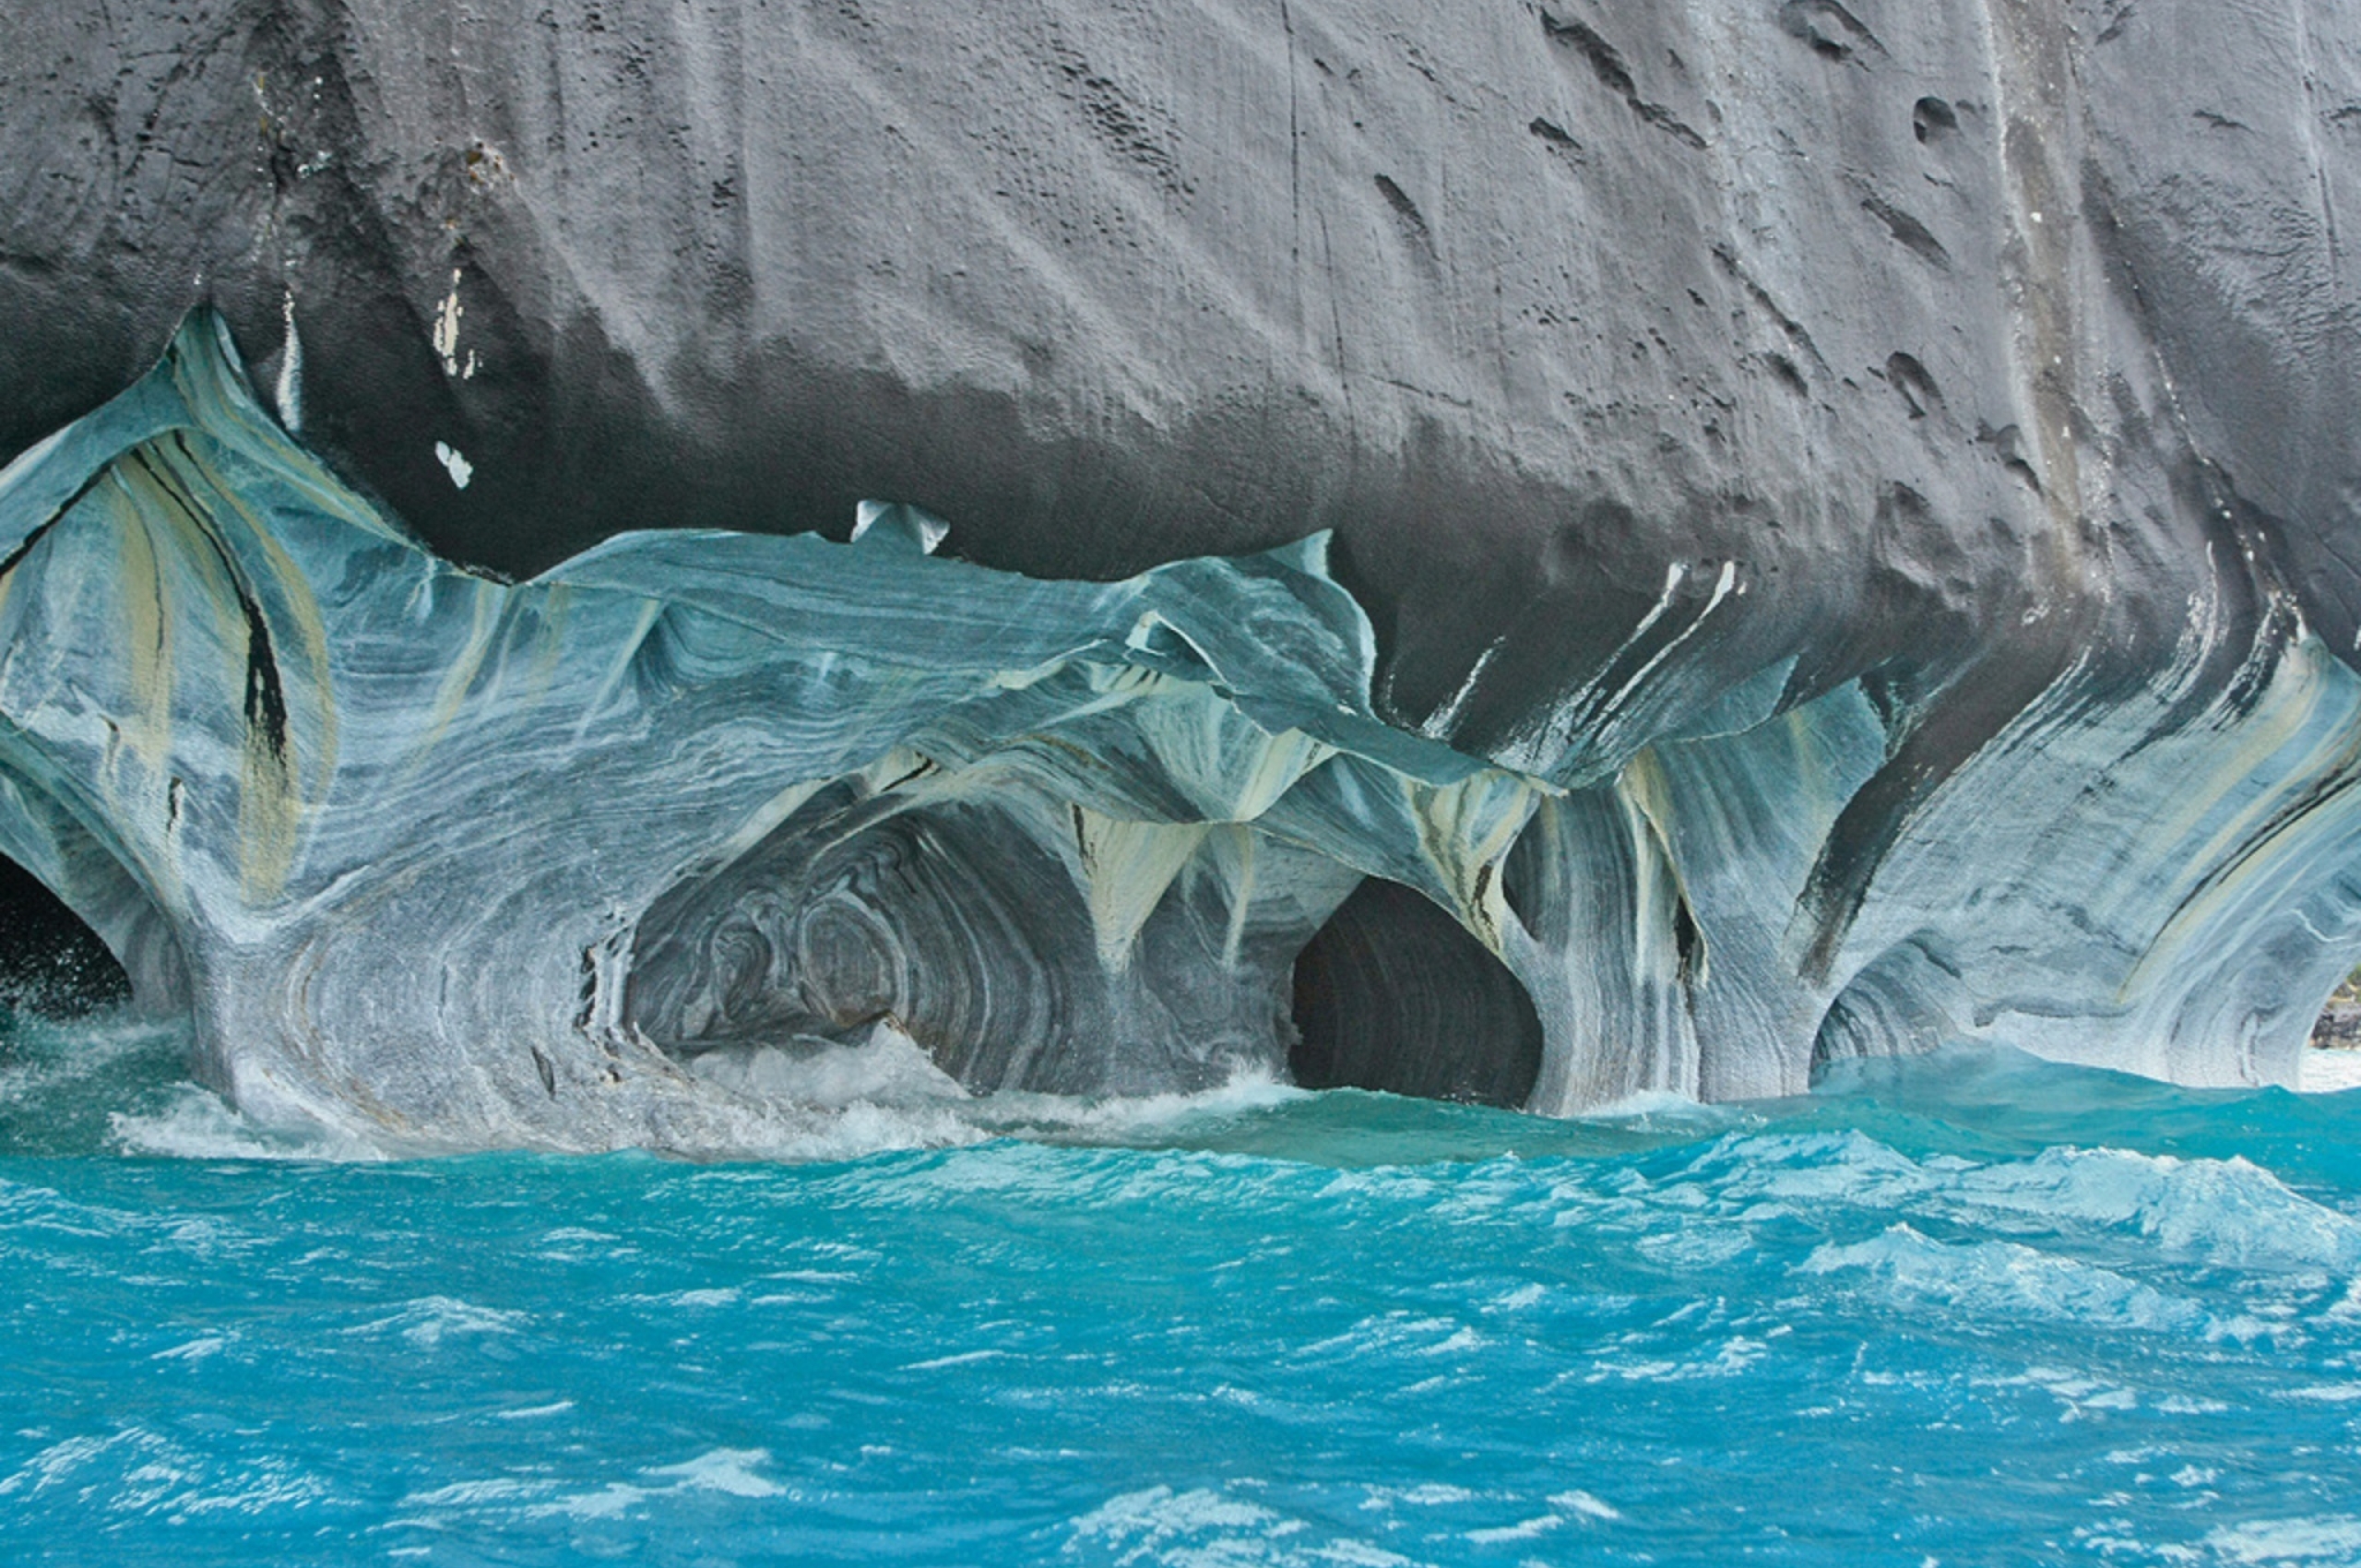 Dip project на чиле. Мраморные пещеры озера Хенераль Каррера. Мраморные пещеры Чиле-Чико, Чили. Мраморные пещеры Патагонии Чили. Чиле Чико озеро.